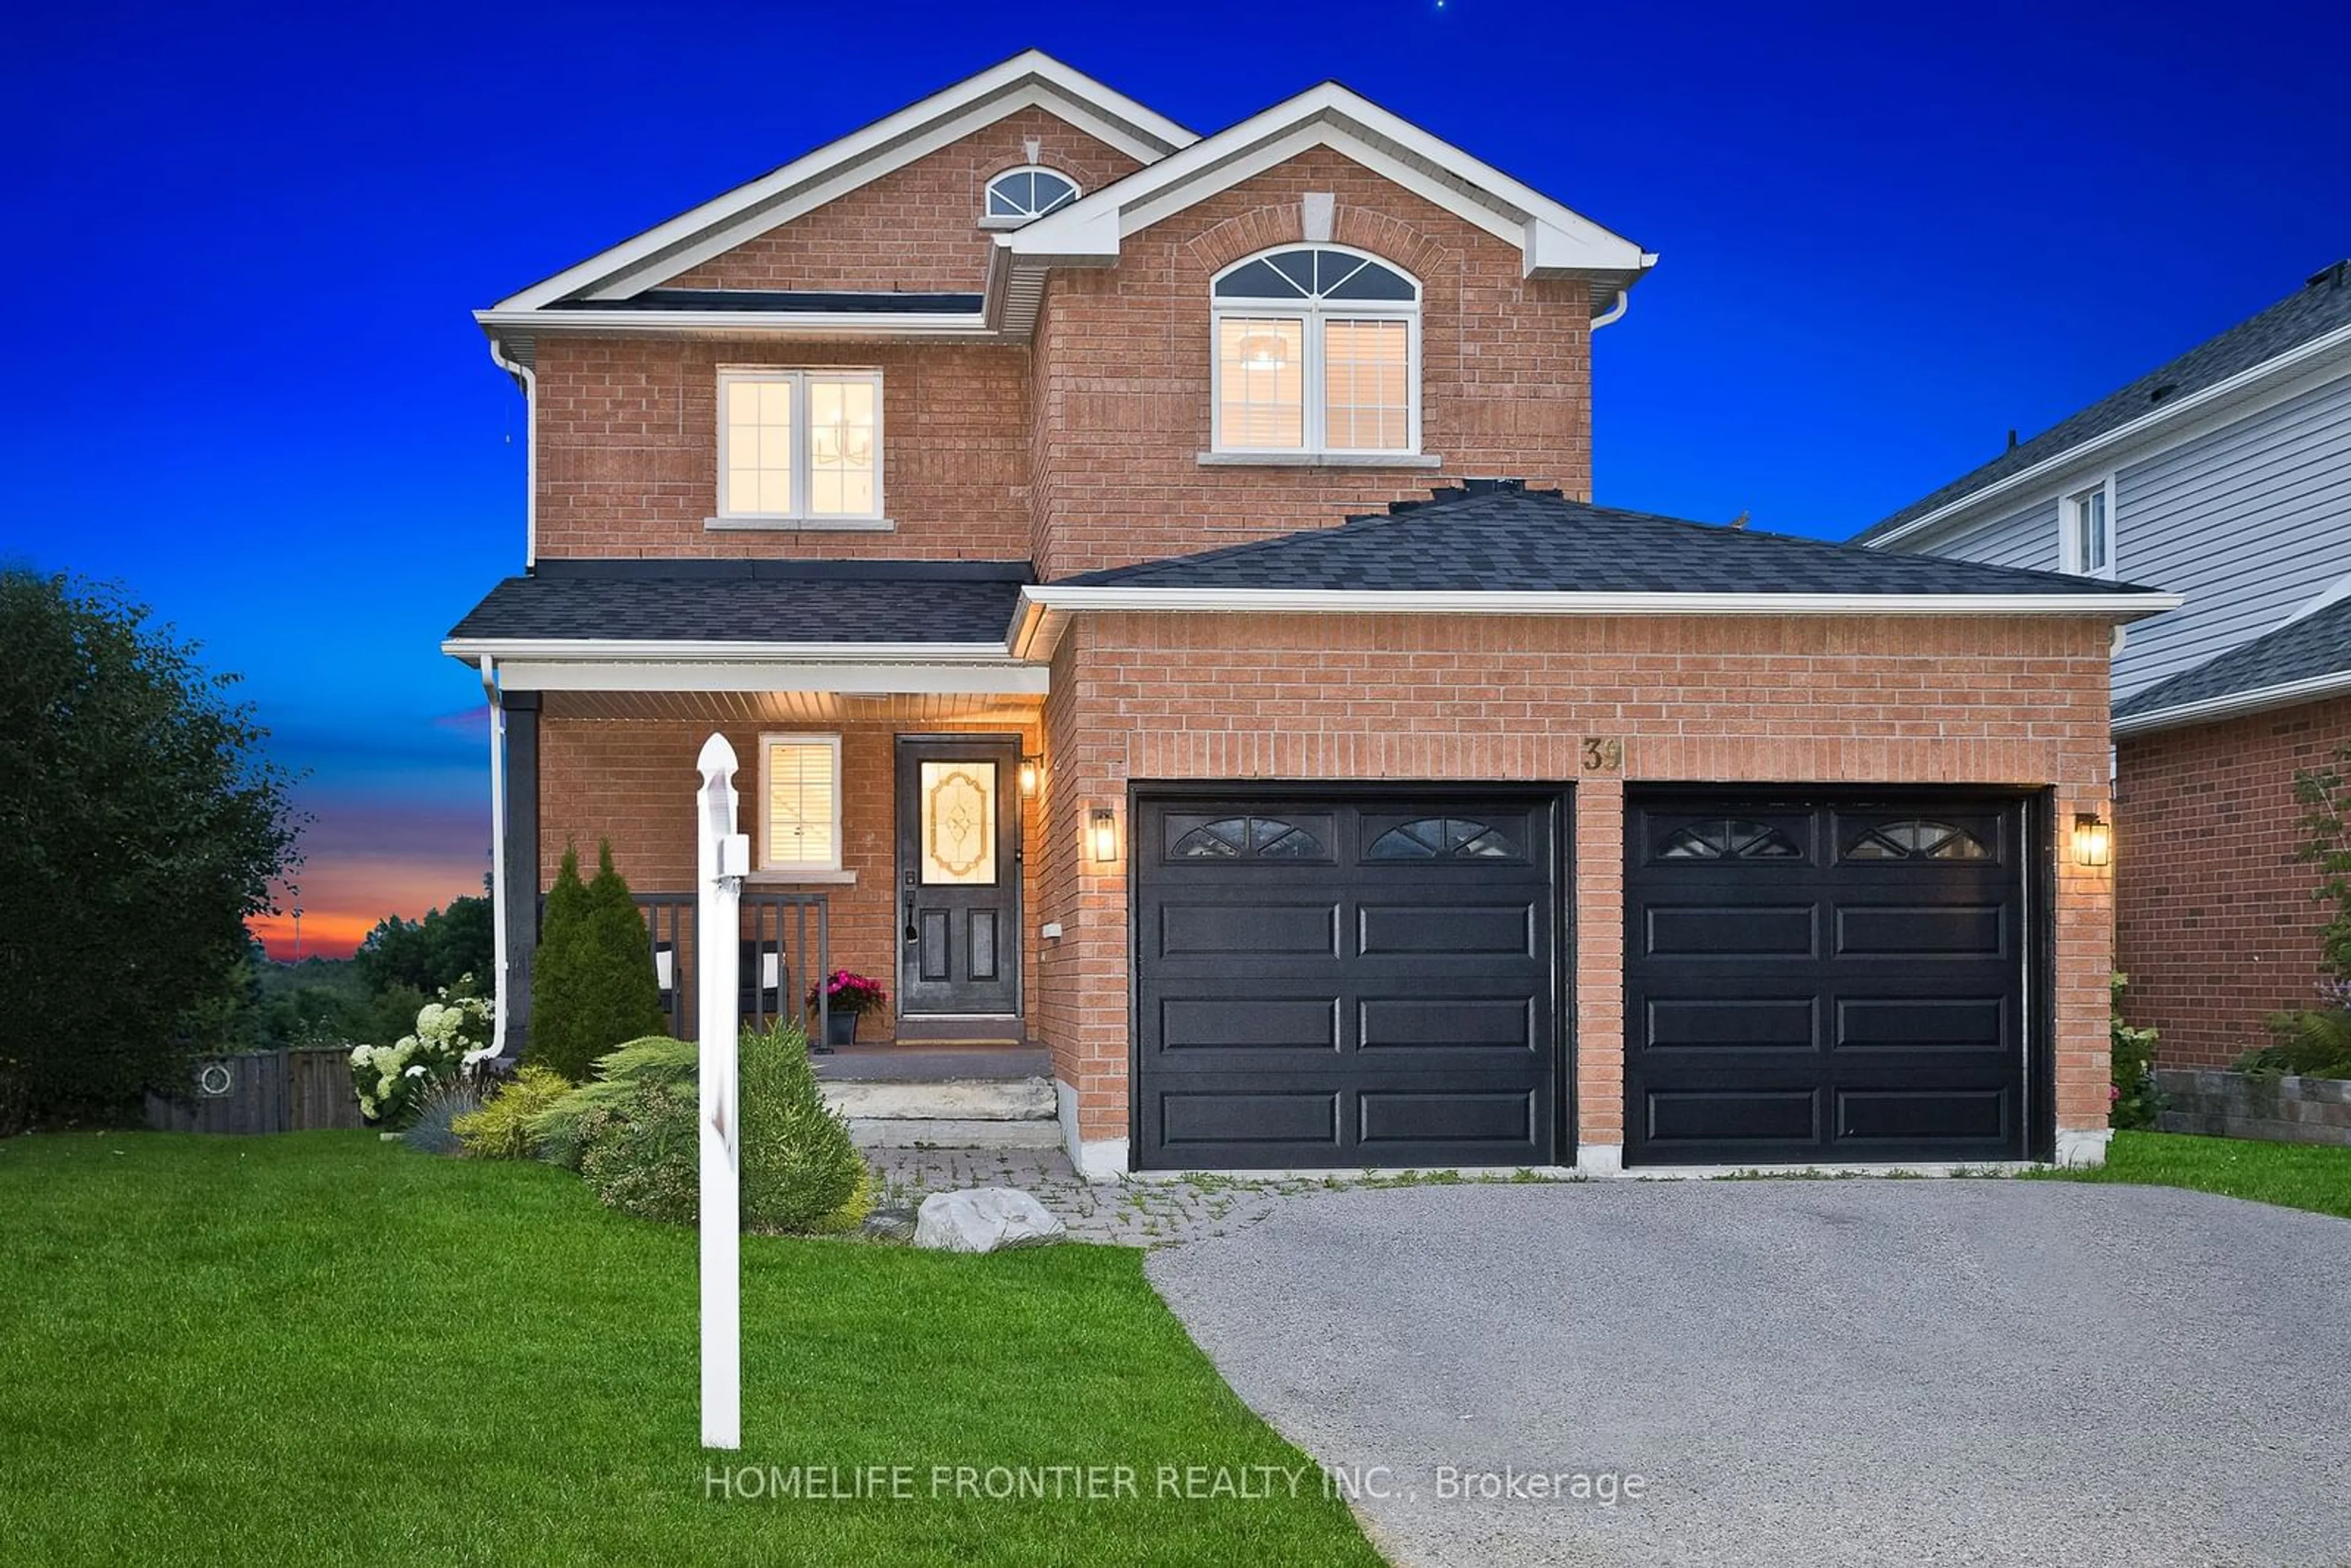 Home with brick exterior material for 39 Eldad Dr, Clarington Ontario L1C 5L1